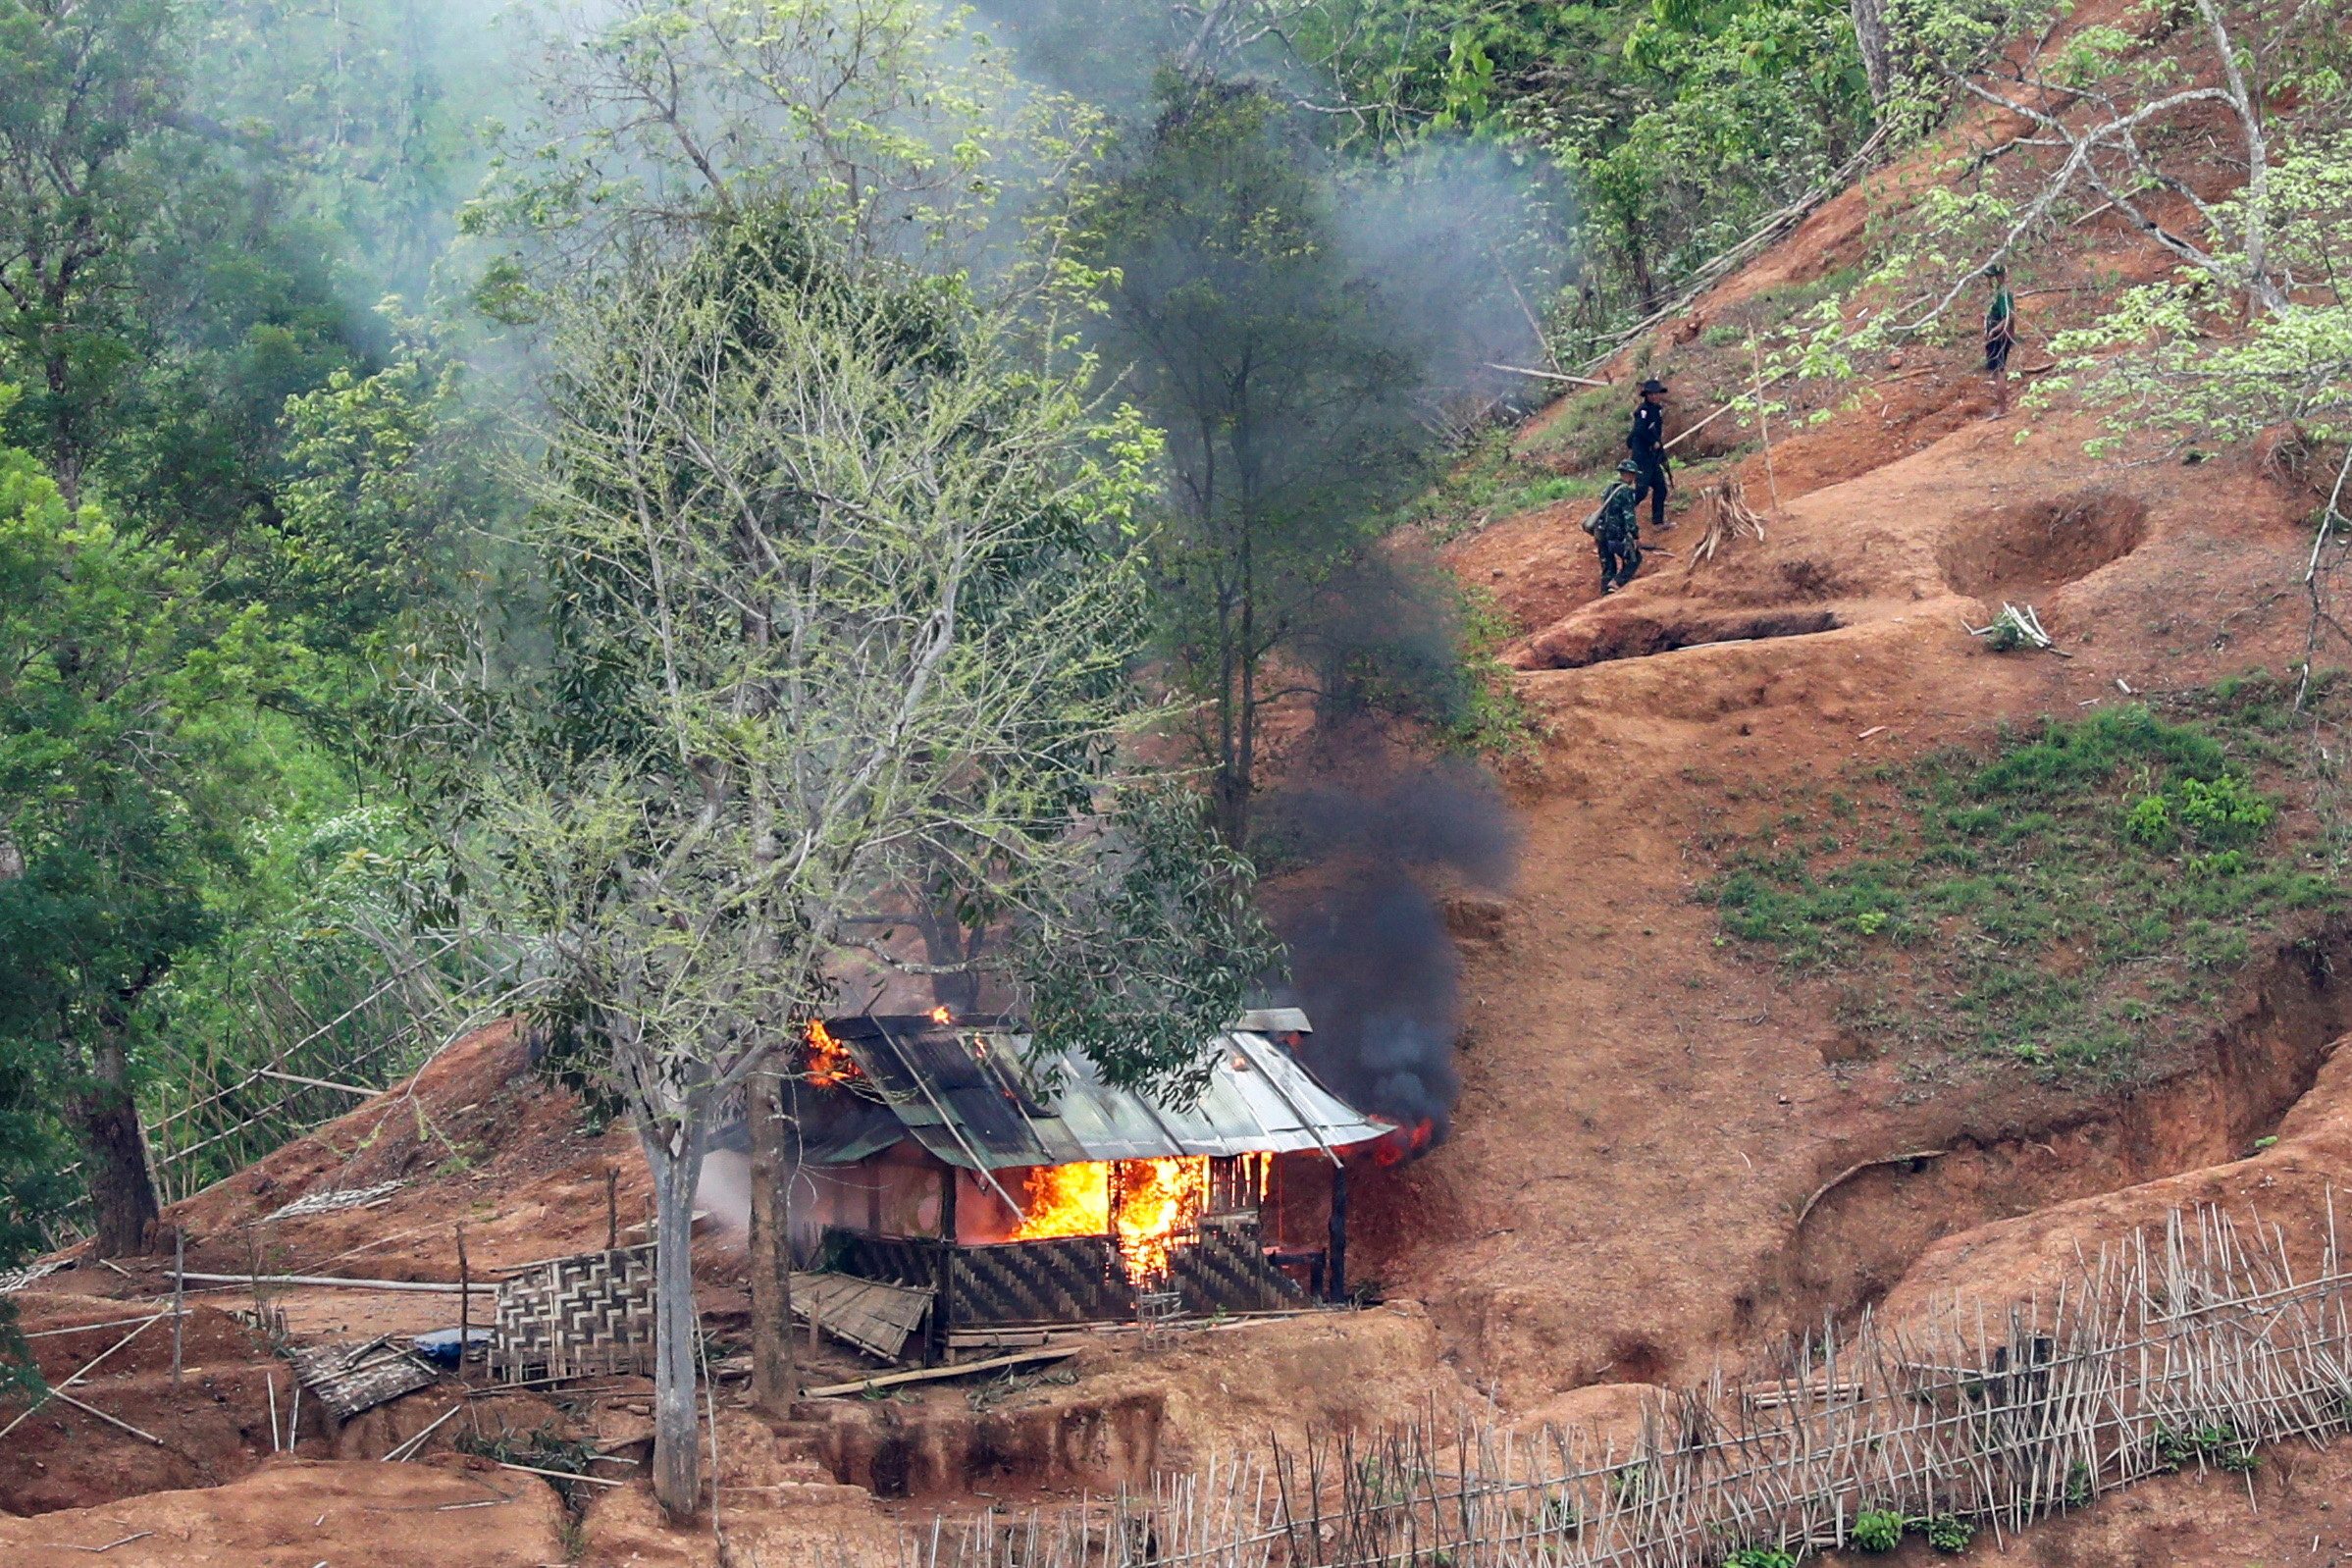 Ribuan penduduk desa Myanmar siap mengungsi dari kekerasan ke Thailand